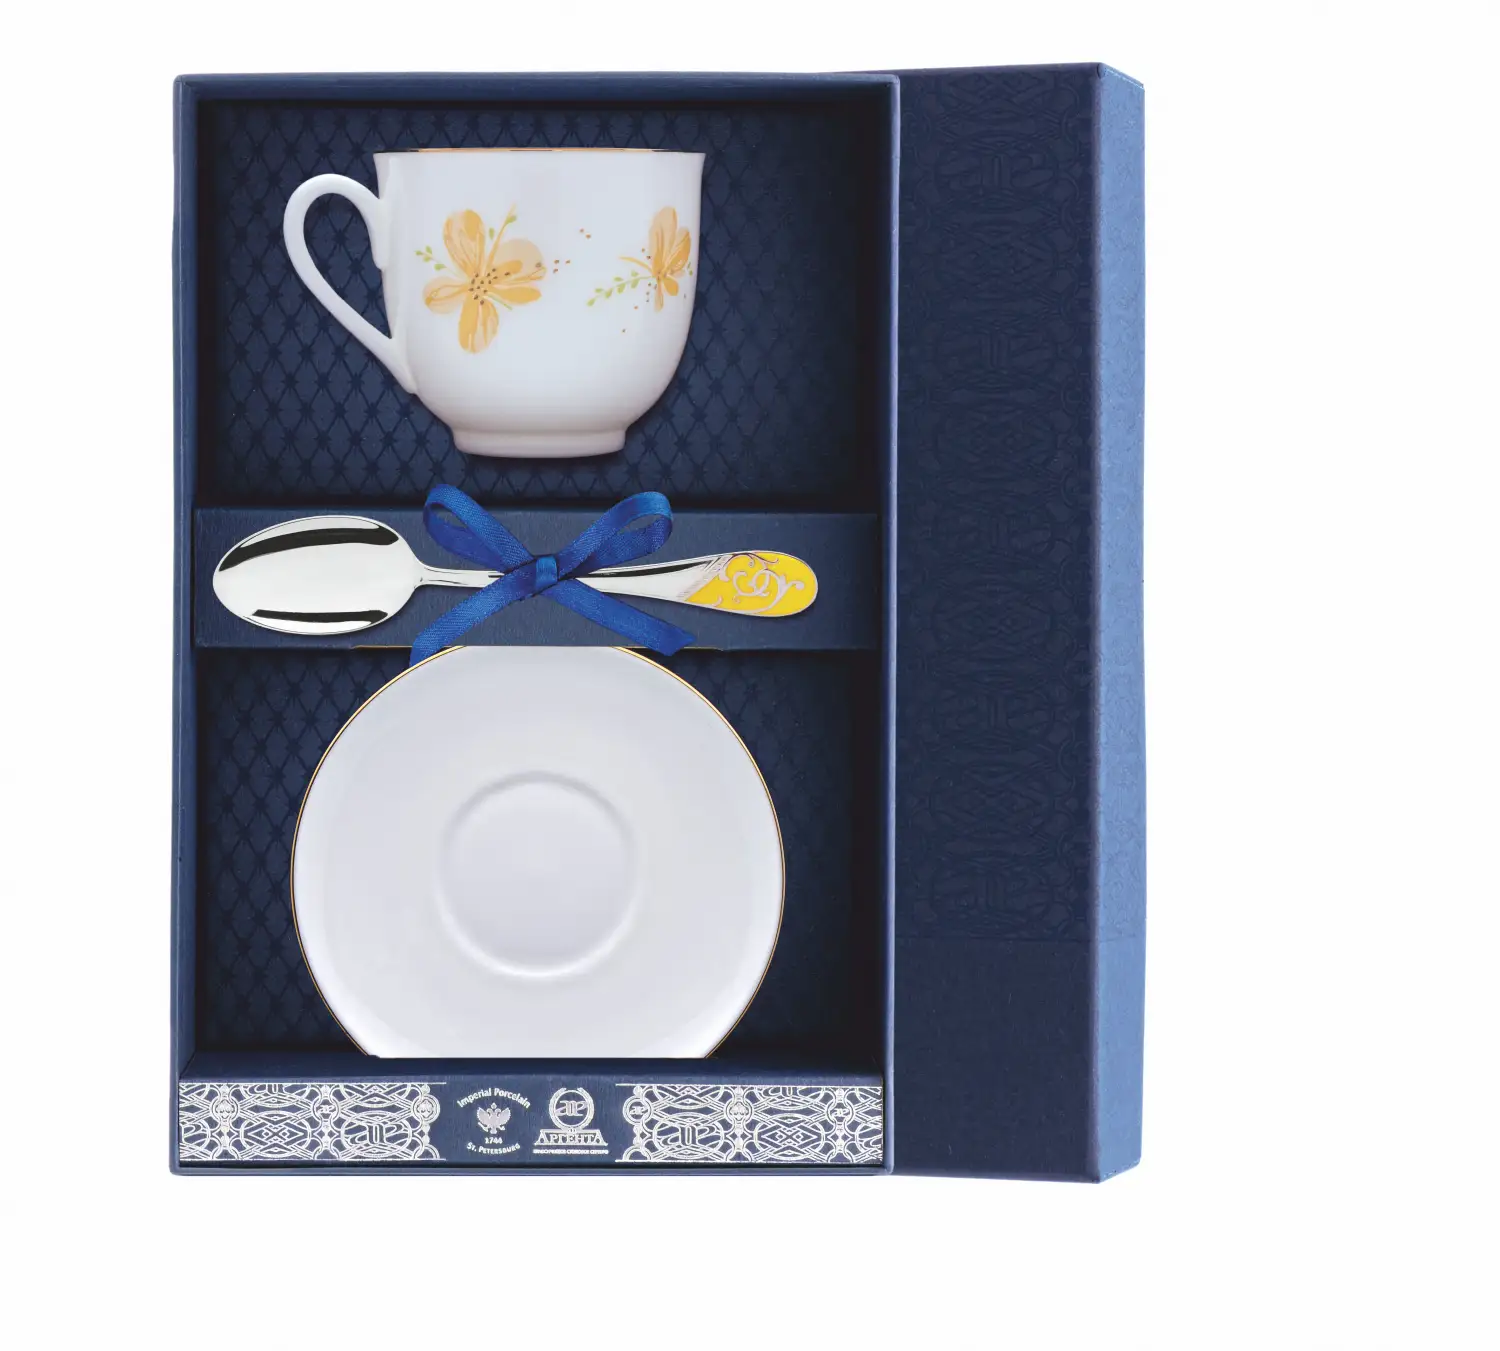 Набор чайный Ландыш - Желтые цветы: блюдце, ложка, чашка (Серебро 925) набор чайный ландыш фигурное катание блюдце ложка чашка серебро 925